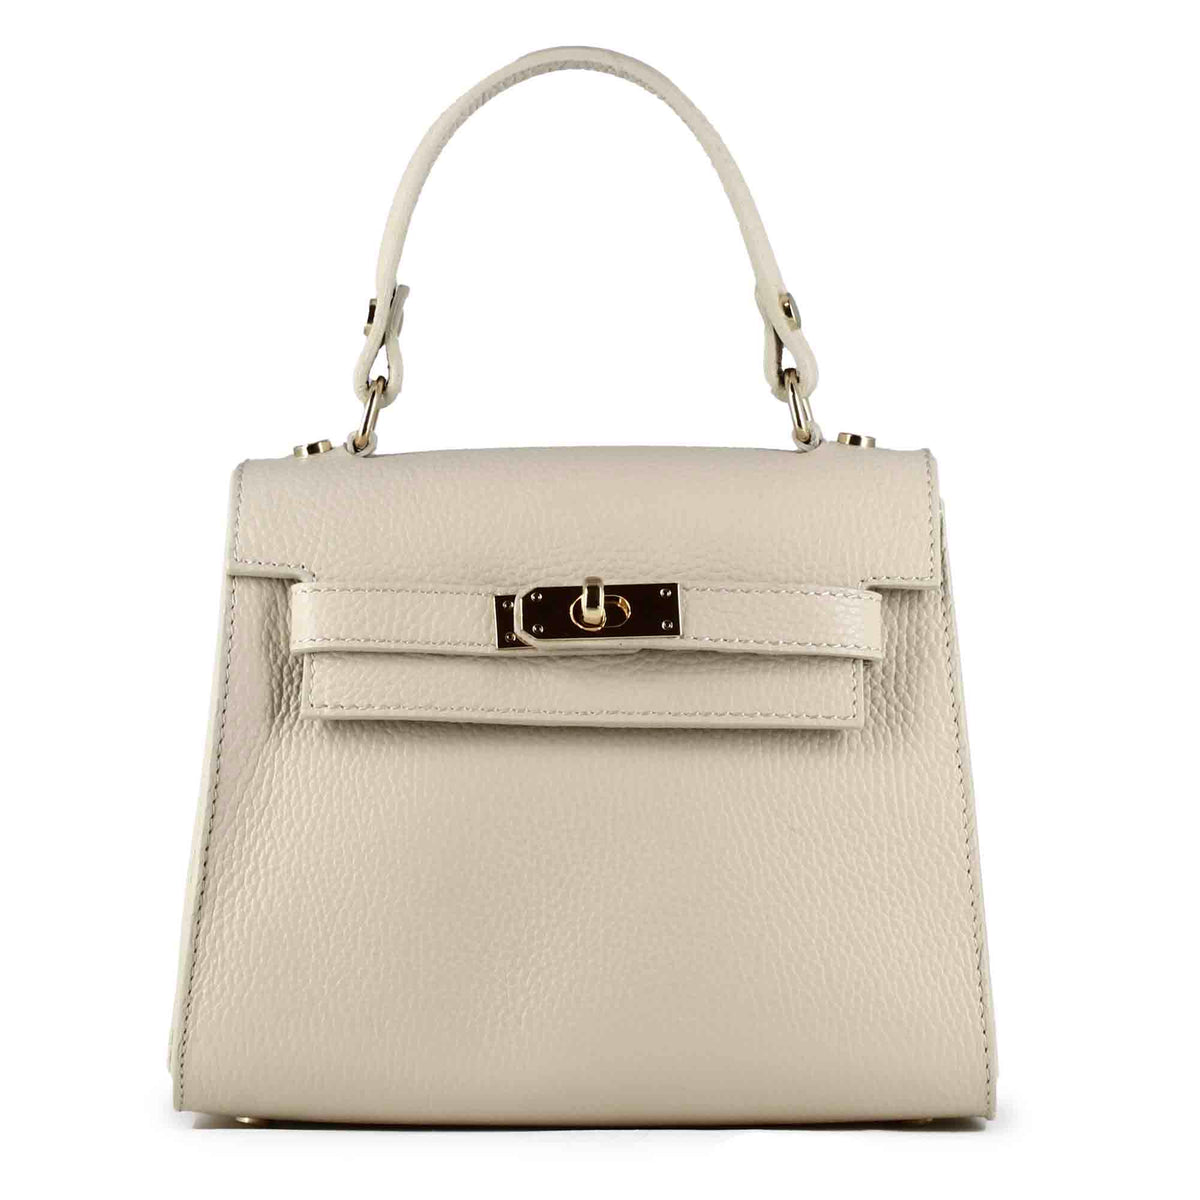 Lady K women's handbag in beige leather